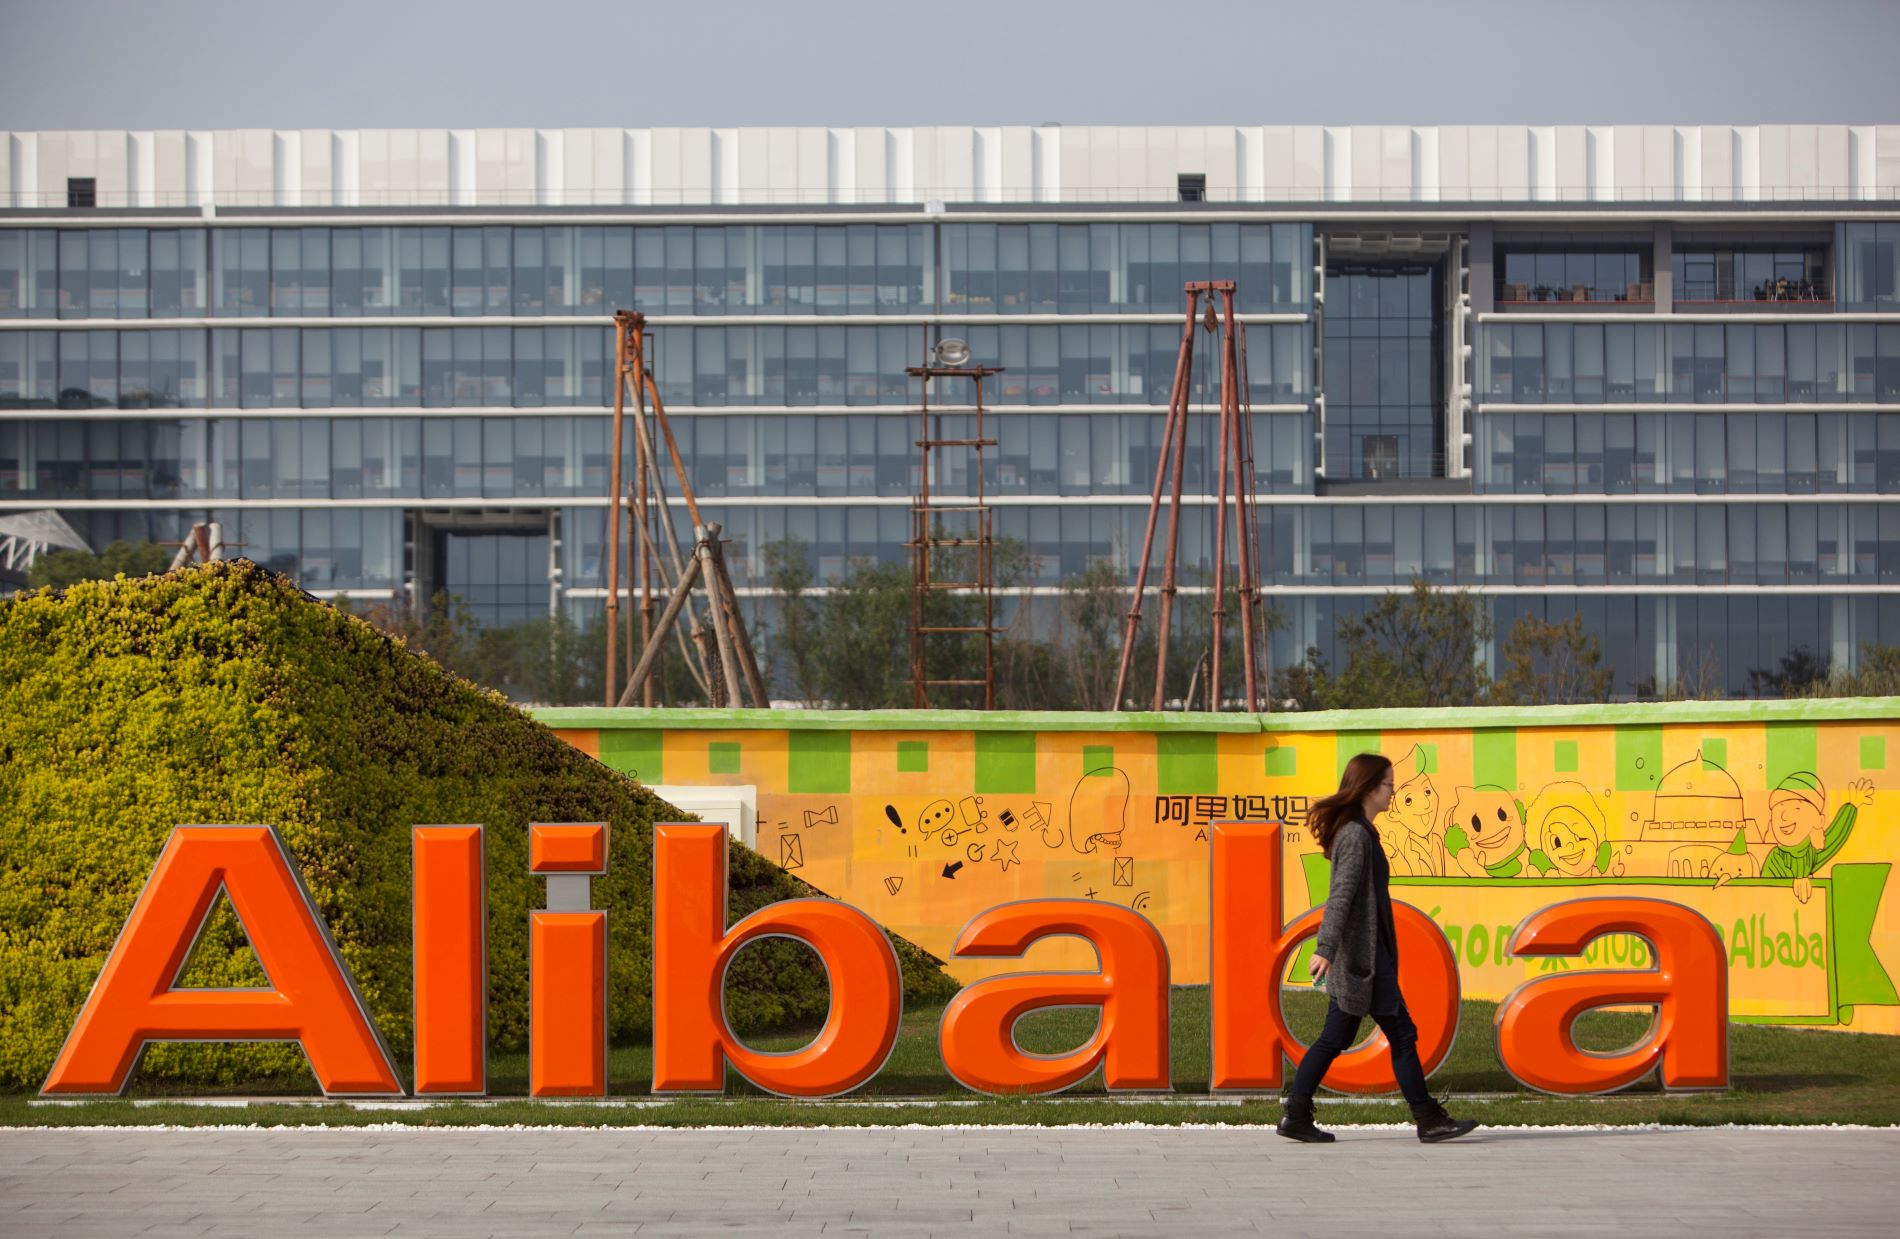 Alibaba © EPA